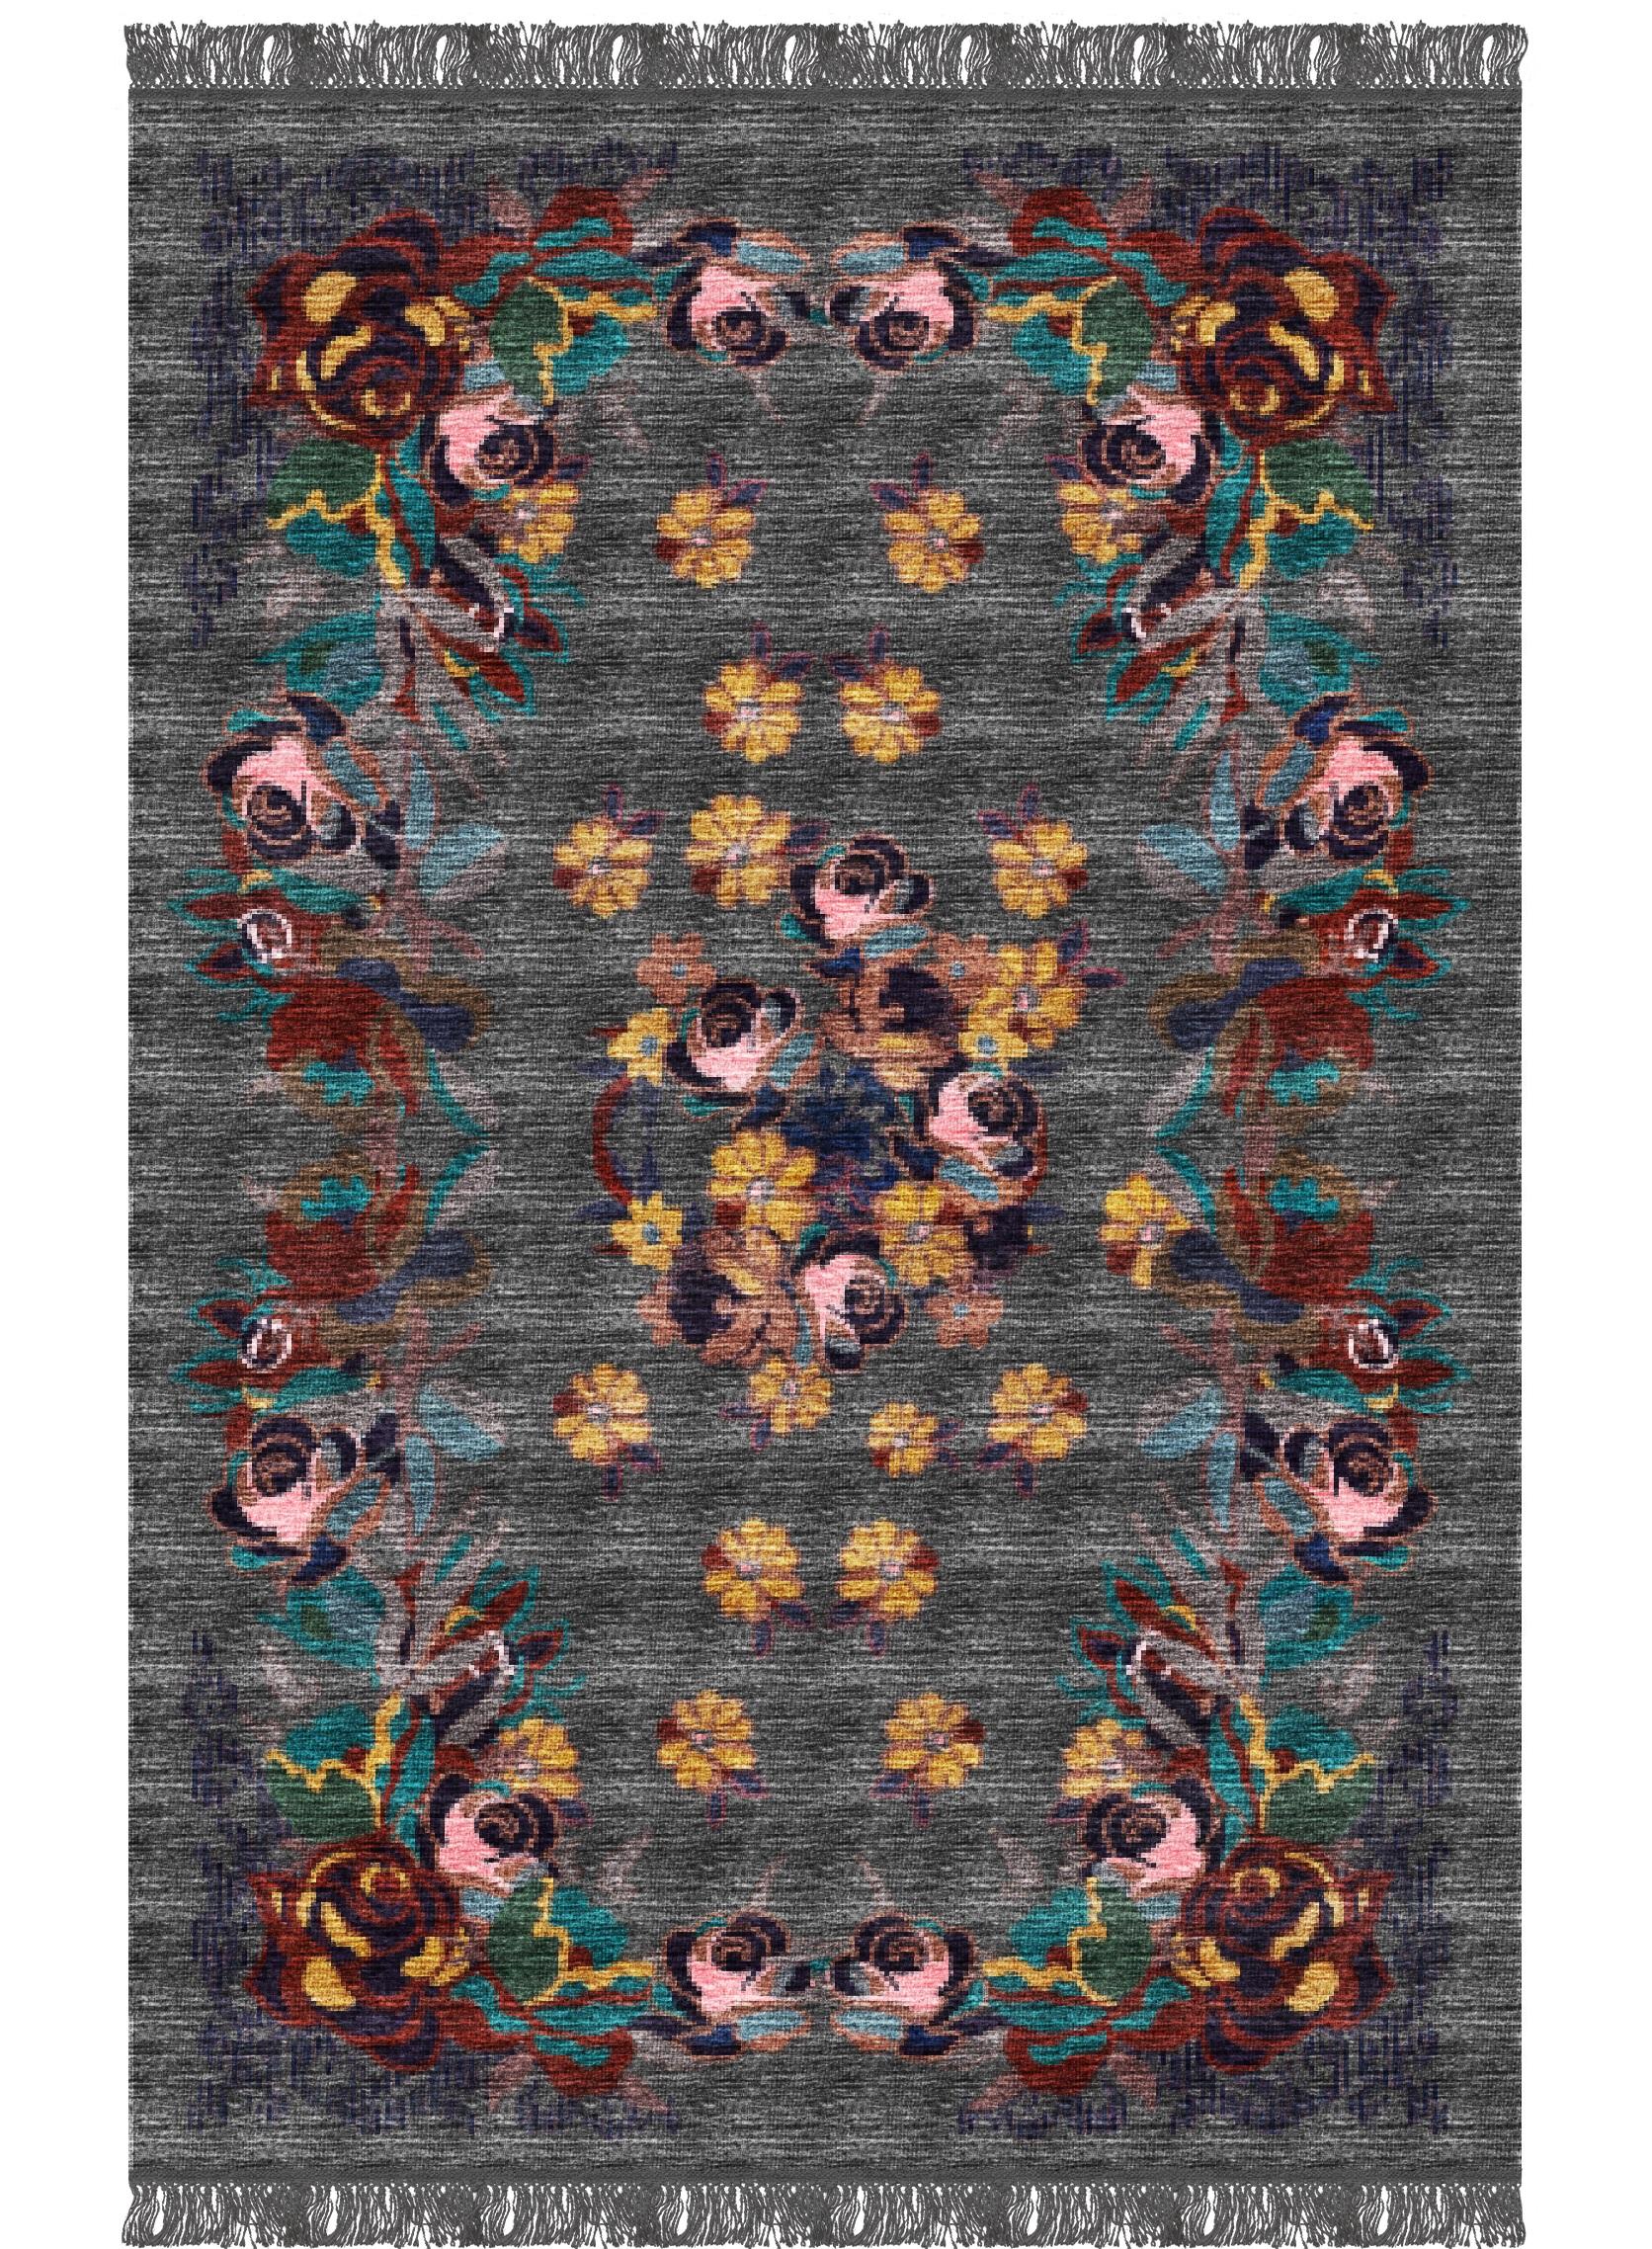 Fiori-Teppich I von Giulio Brambilla
Abmessungen: D 300 x B 200 x H 0,5 cm
MATERIALIEN: NZ-Wolle, Melange-Garn

Eine fesselnde Komposition, inspiriert von georgischer Kunst, ist dieser exquisite Teppich, ein zeitgenössisches Design des Künstlers und